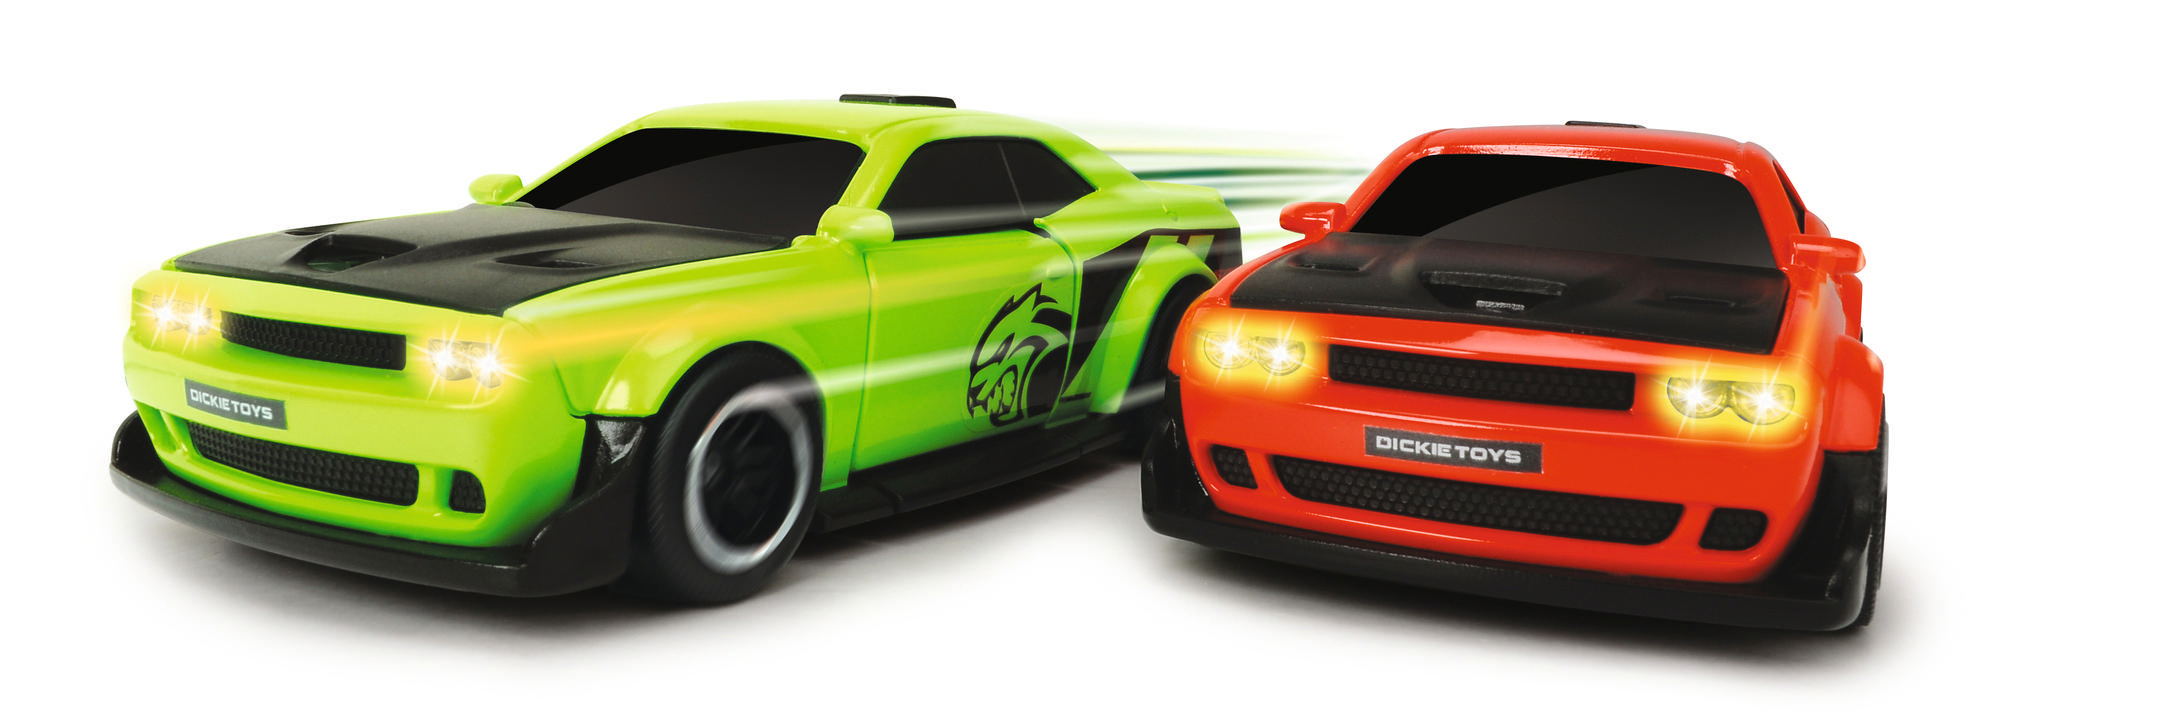 Freilauf, Dodge mit Challenger sortiert Spielzeugauto Rot/Grün 2-fach Hellcat, Spielzeugauto DICKIE-TOYS SRT